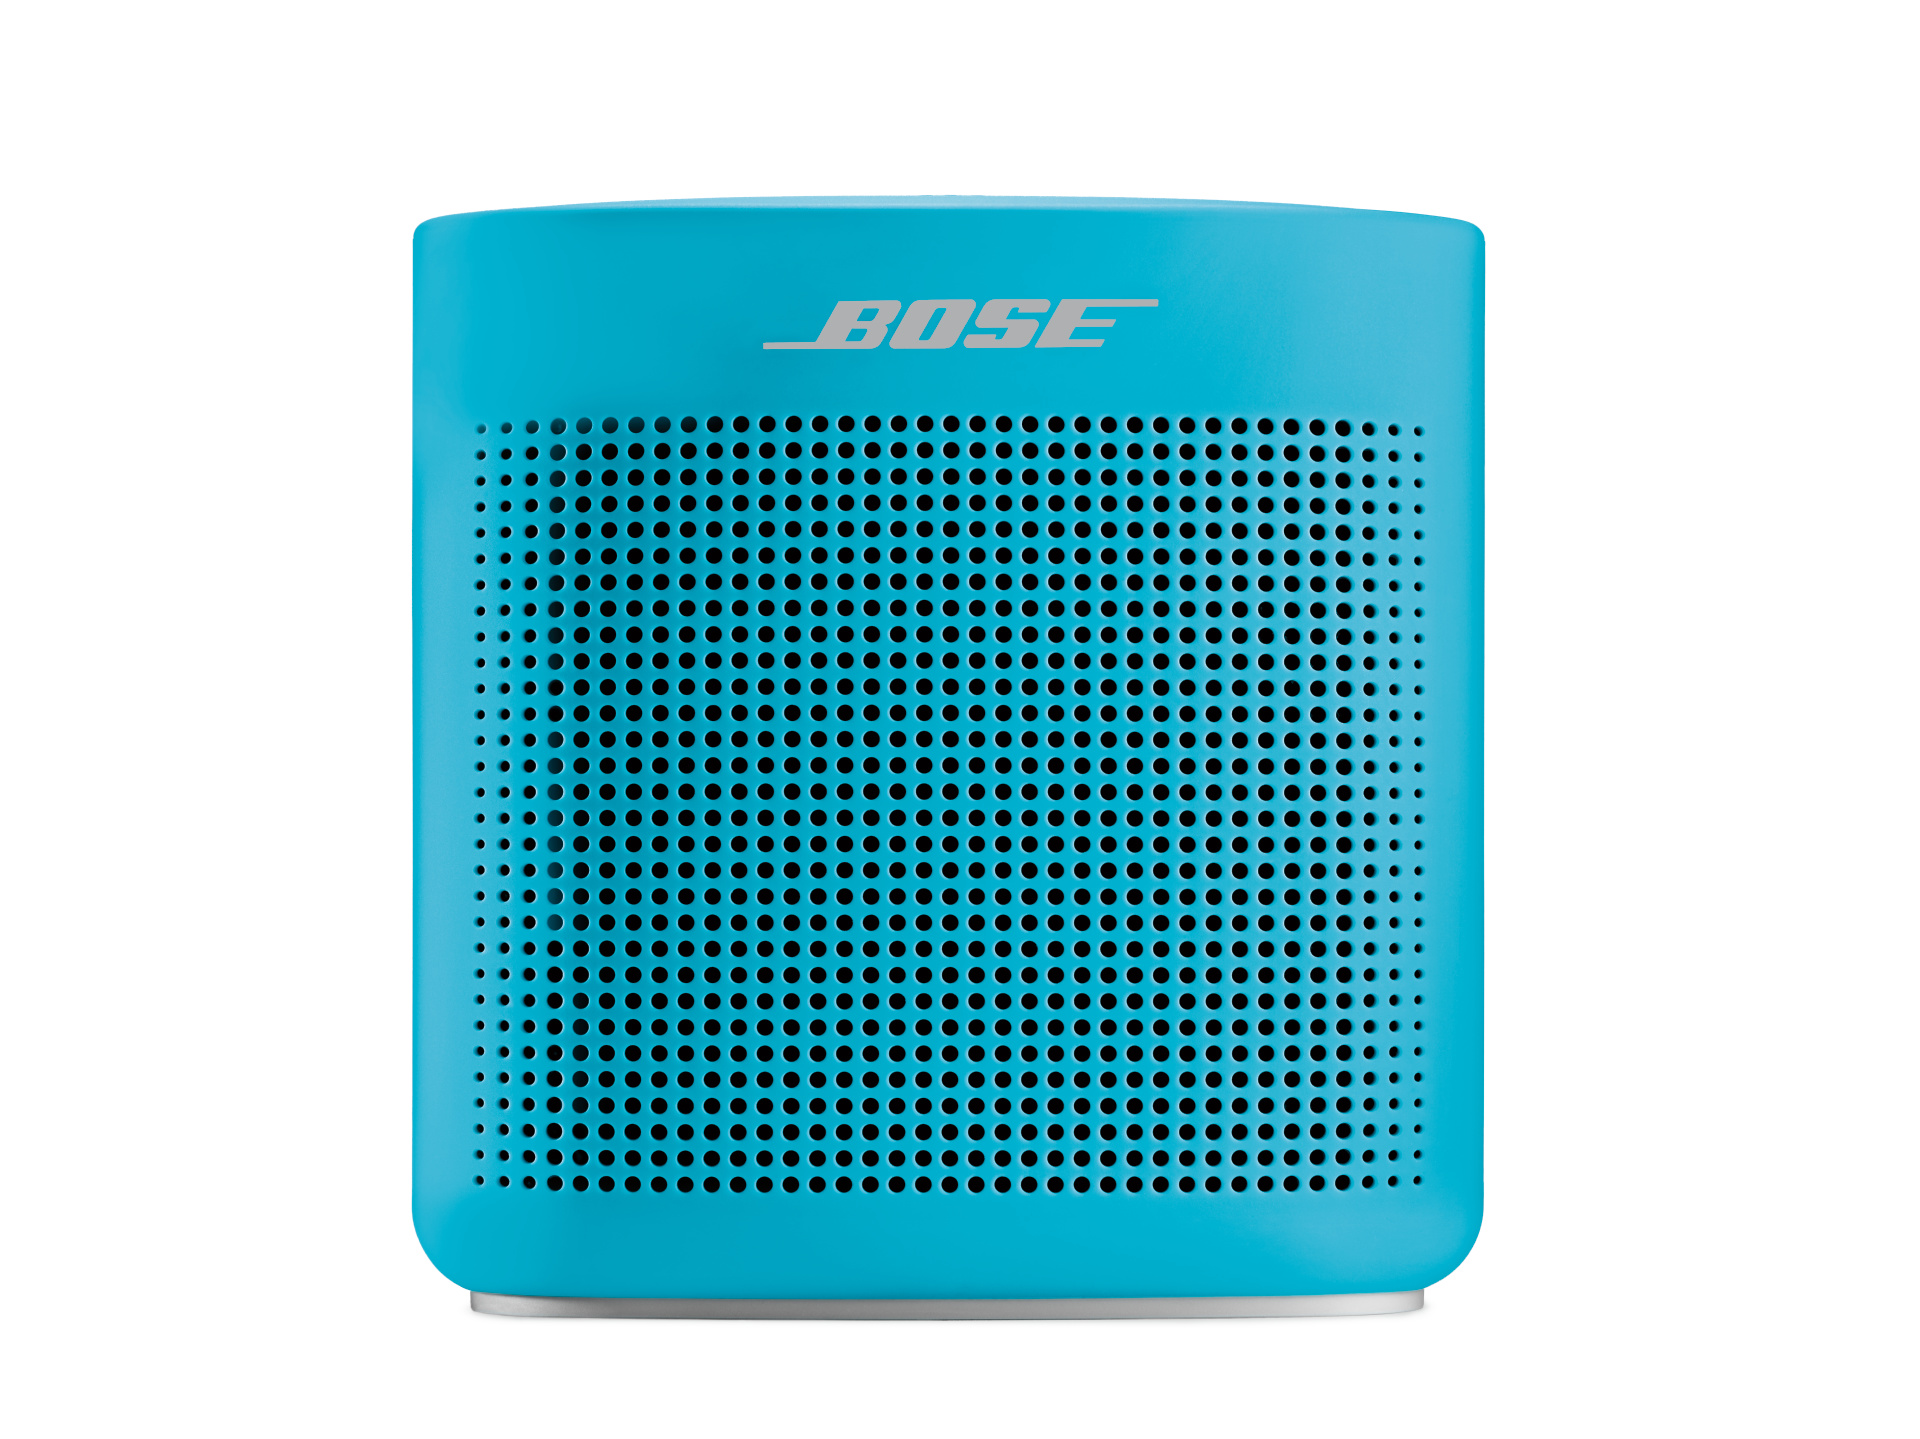 Bose SoundLink Portable Bluetooth Speaker, Blue, 752195-0500 - image 1 of 7